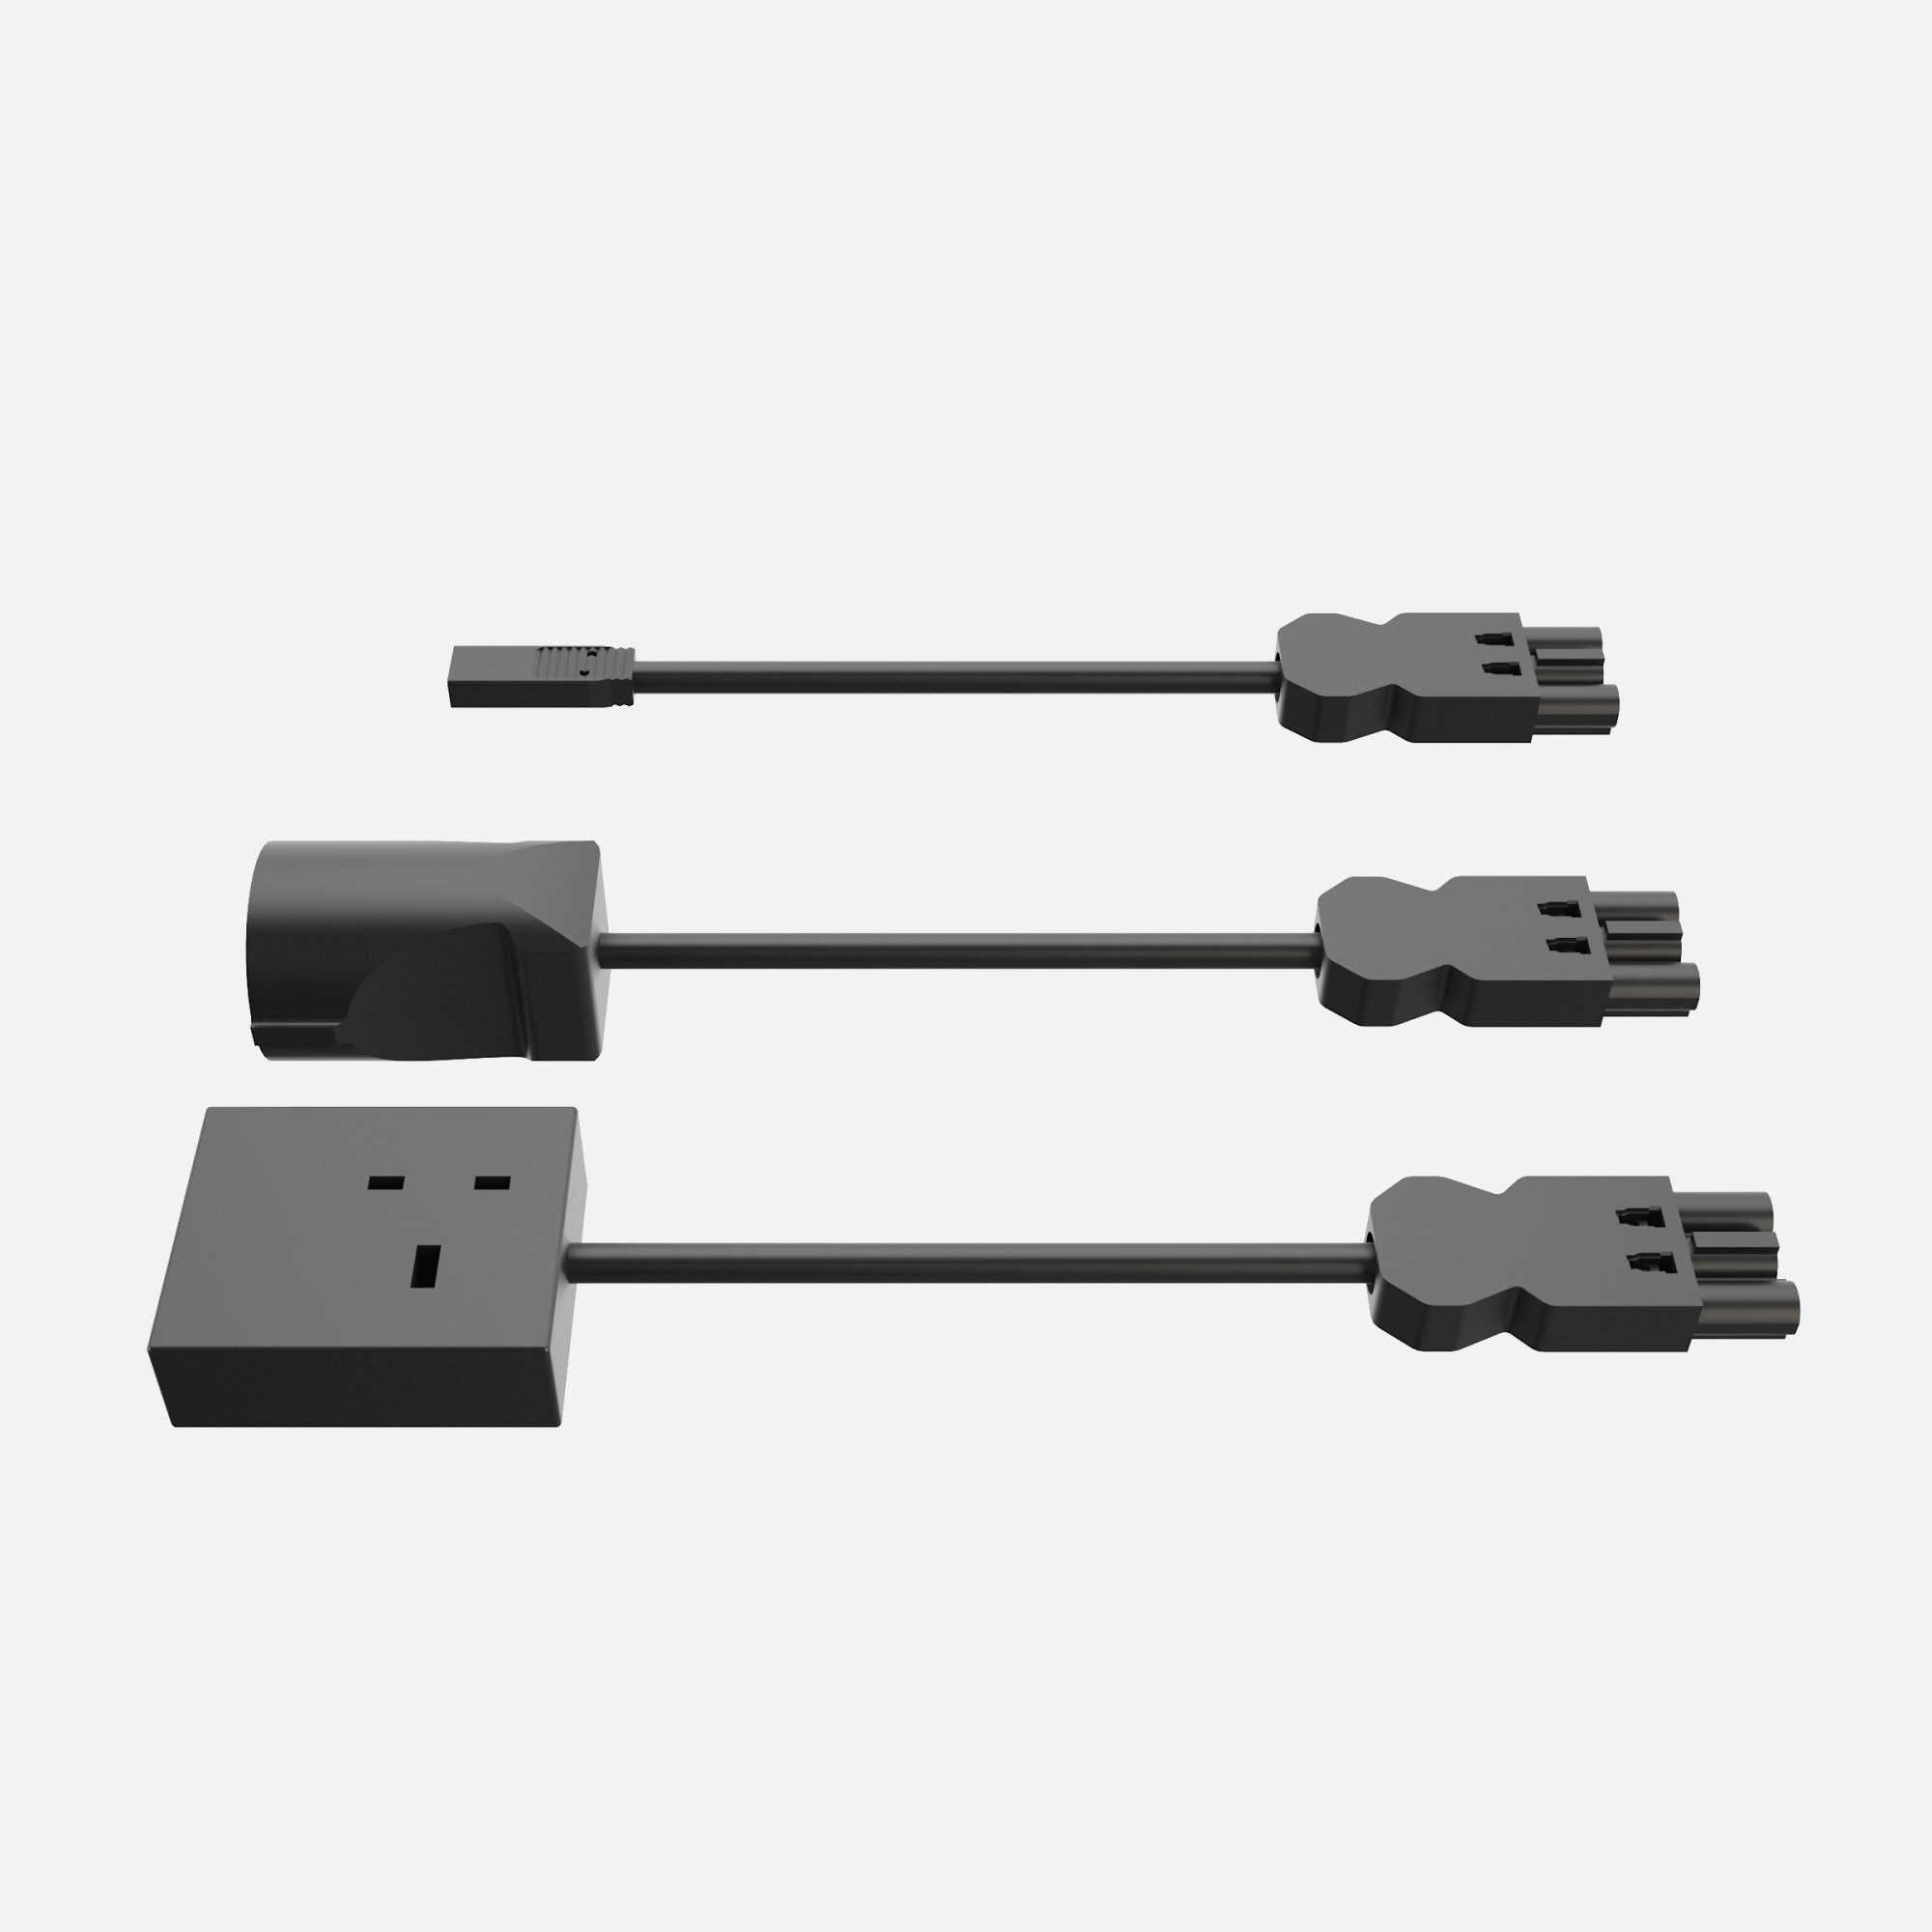 Produktbild (Netzanschlusskabel mit GST18i3 Stecker – für 120-240 V AC Verbraucher, max 5 A)